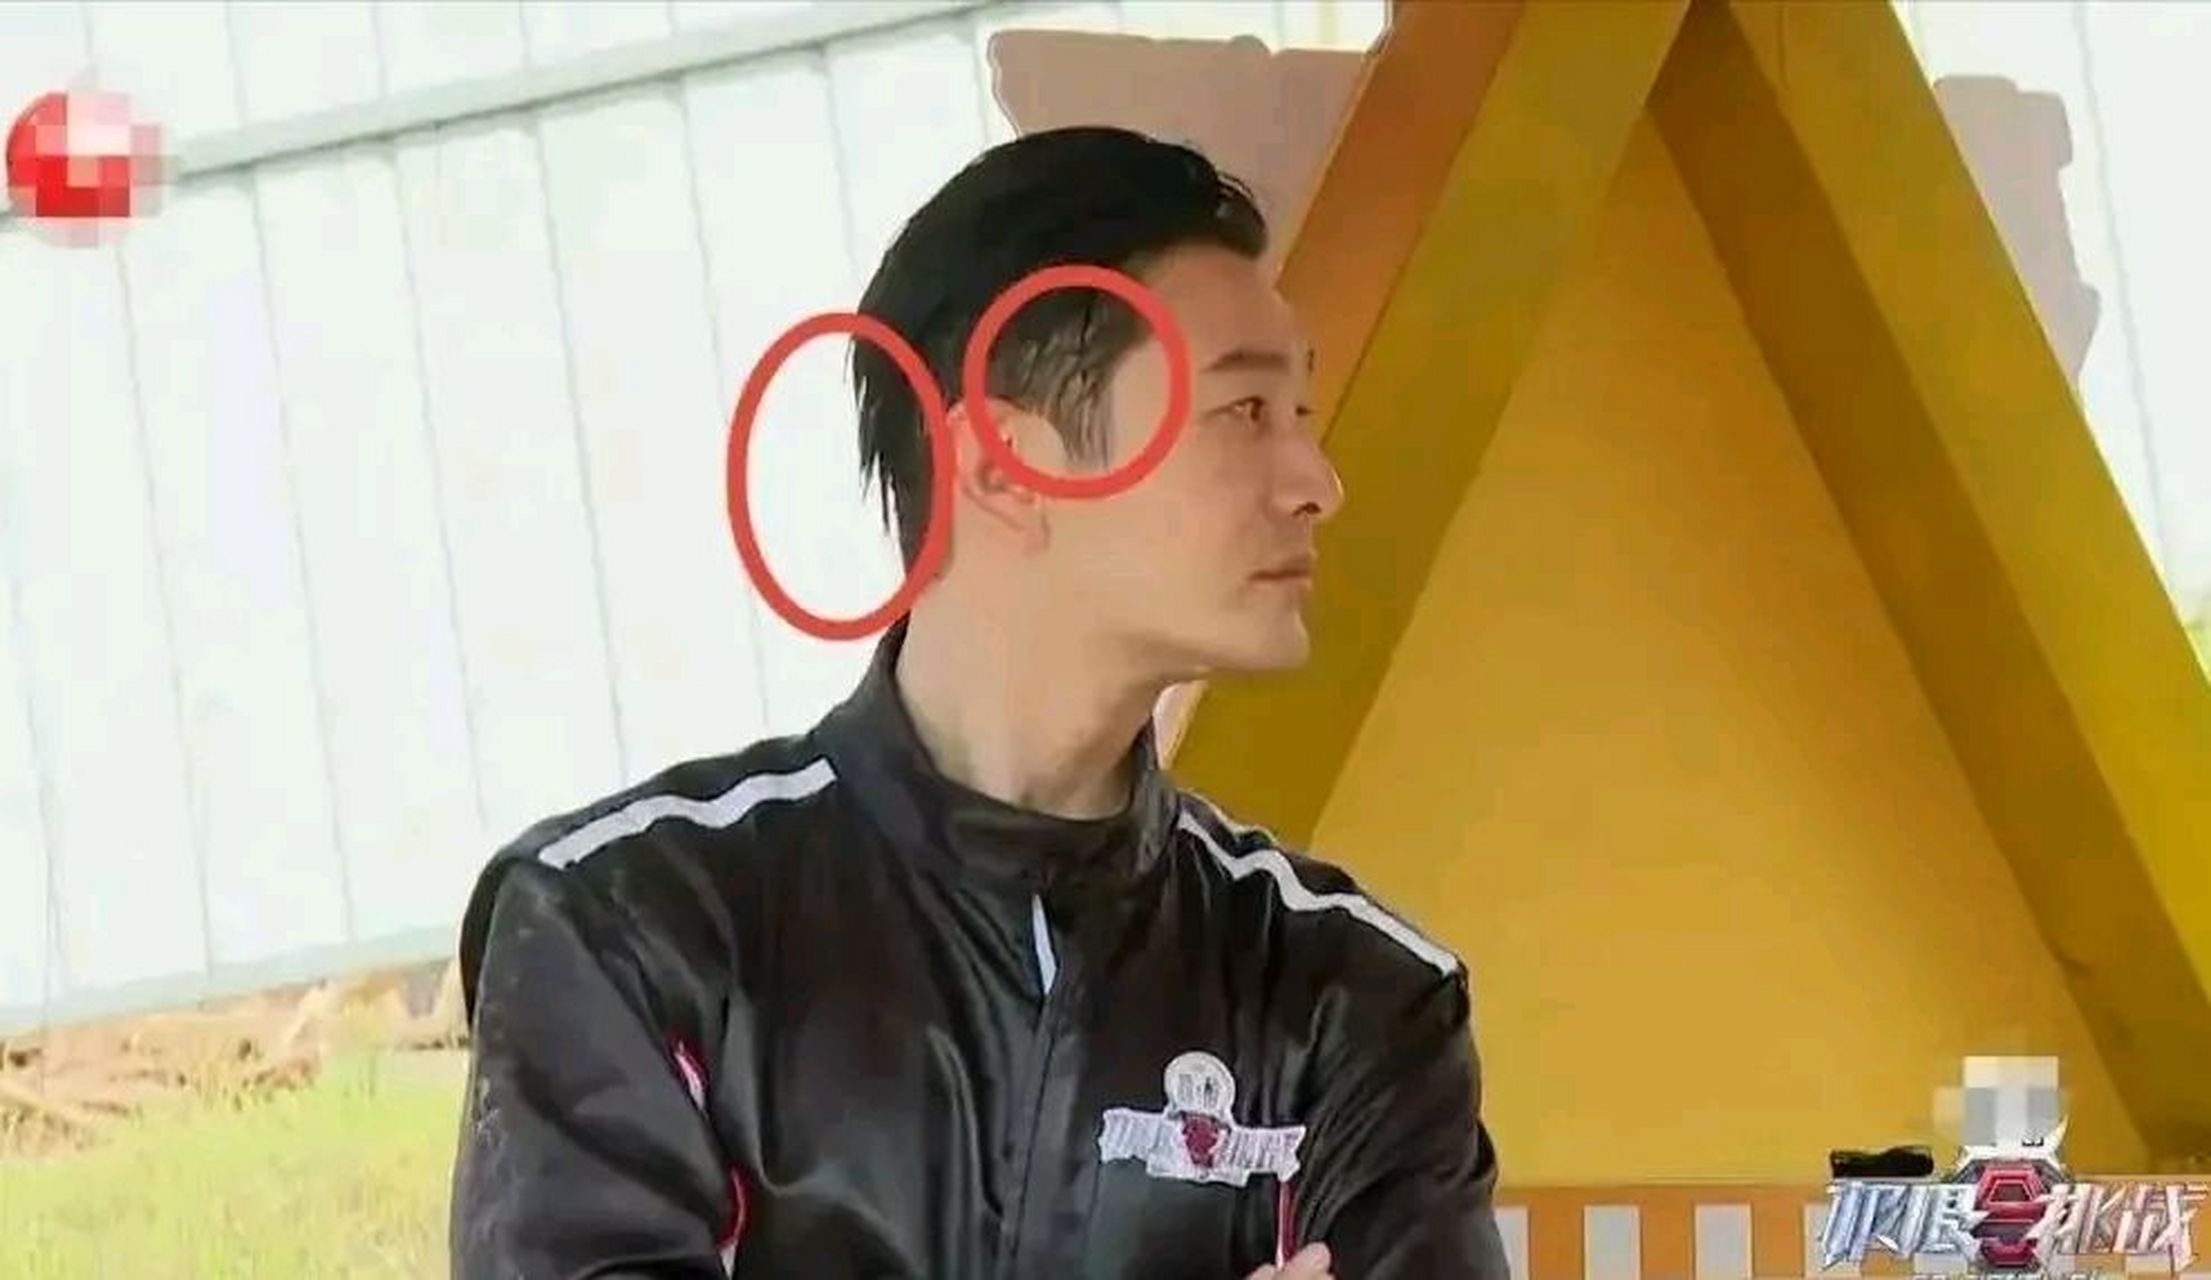 近日,黄晓明在《极限挑战9》中的秃顶和用假发片伪装的尴尬被曝光